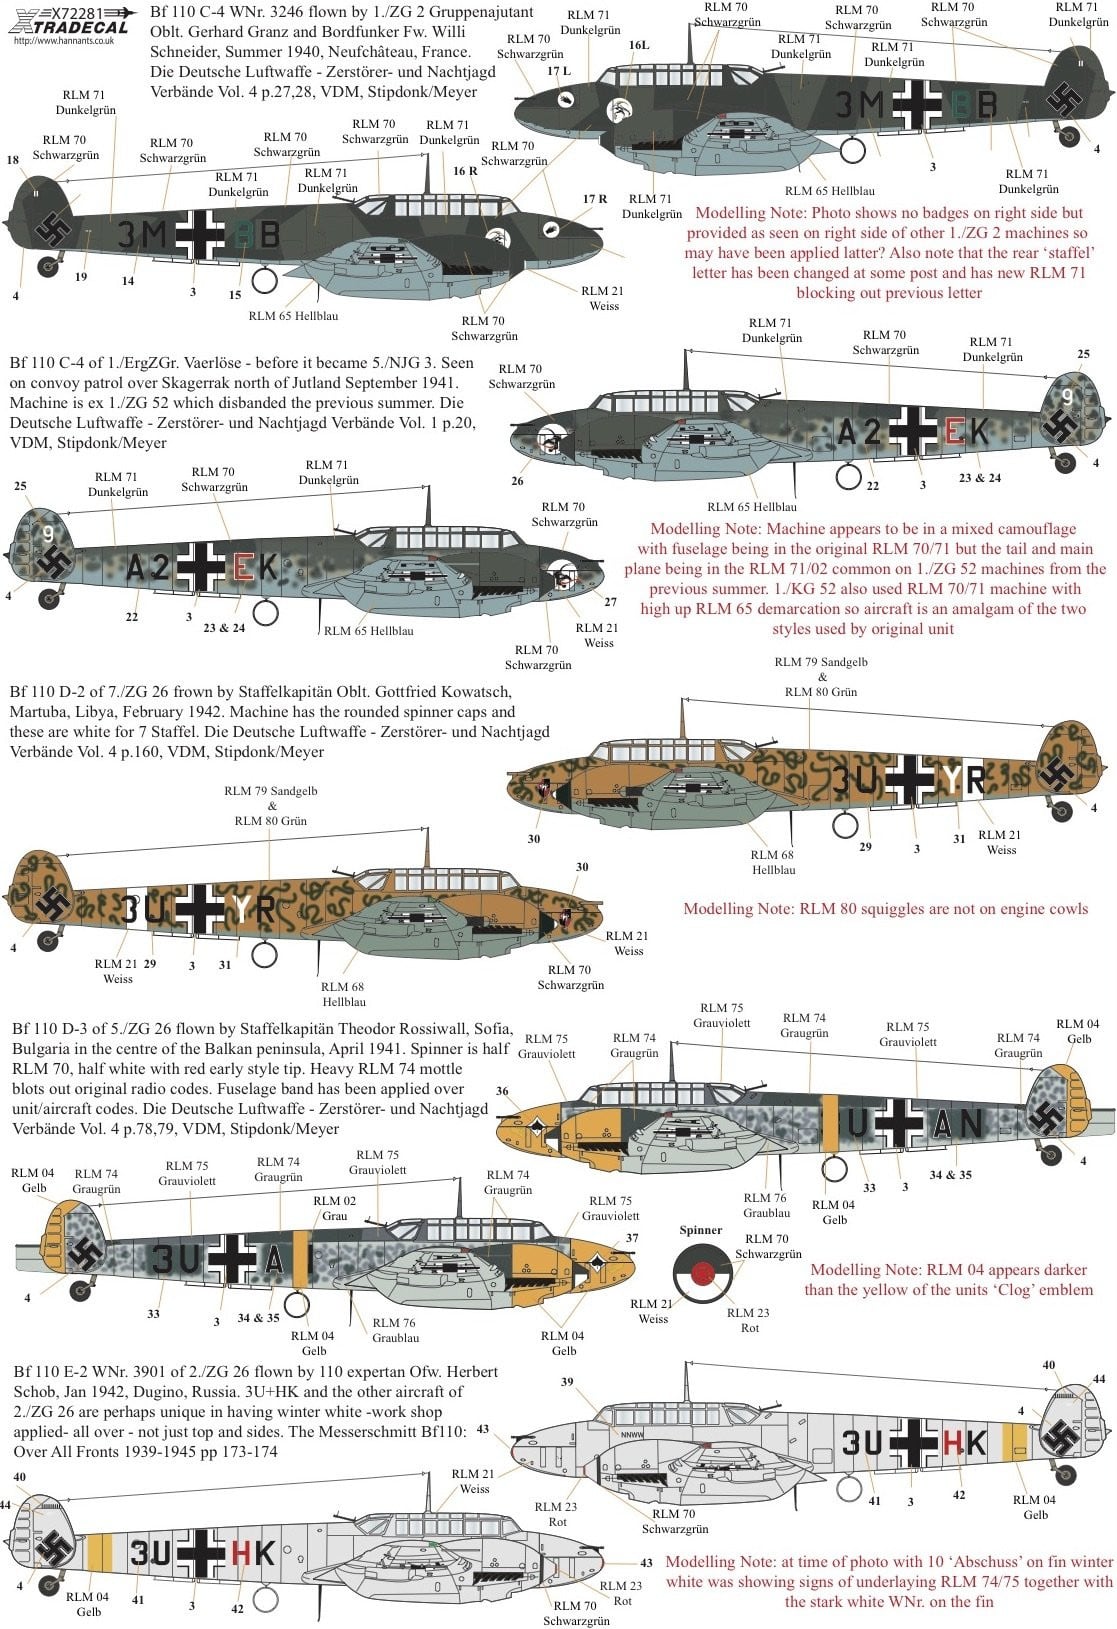 Xtradecal X72281 1/72 Messerschmitt Bf-110 C,D,E,F,G Model Decals - SGS Model Store